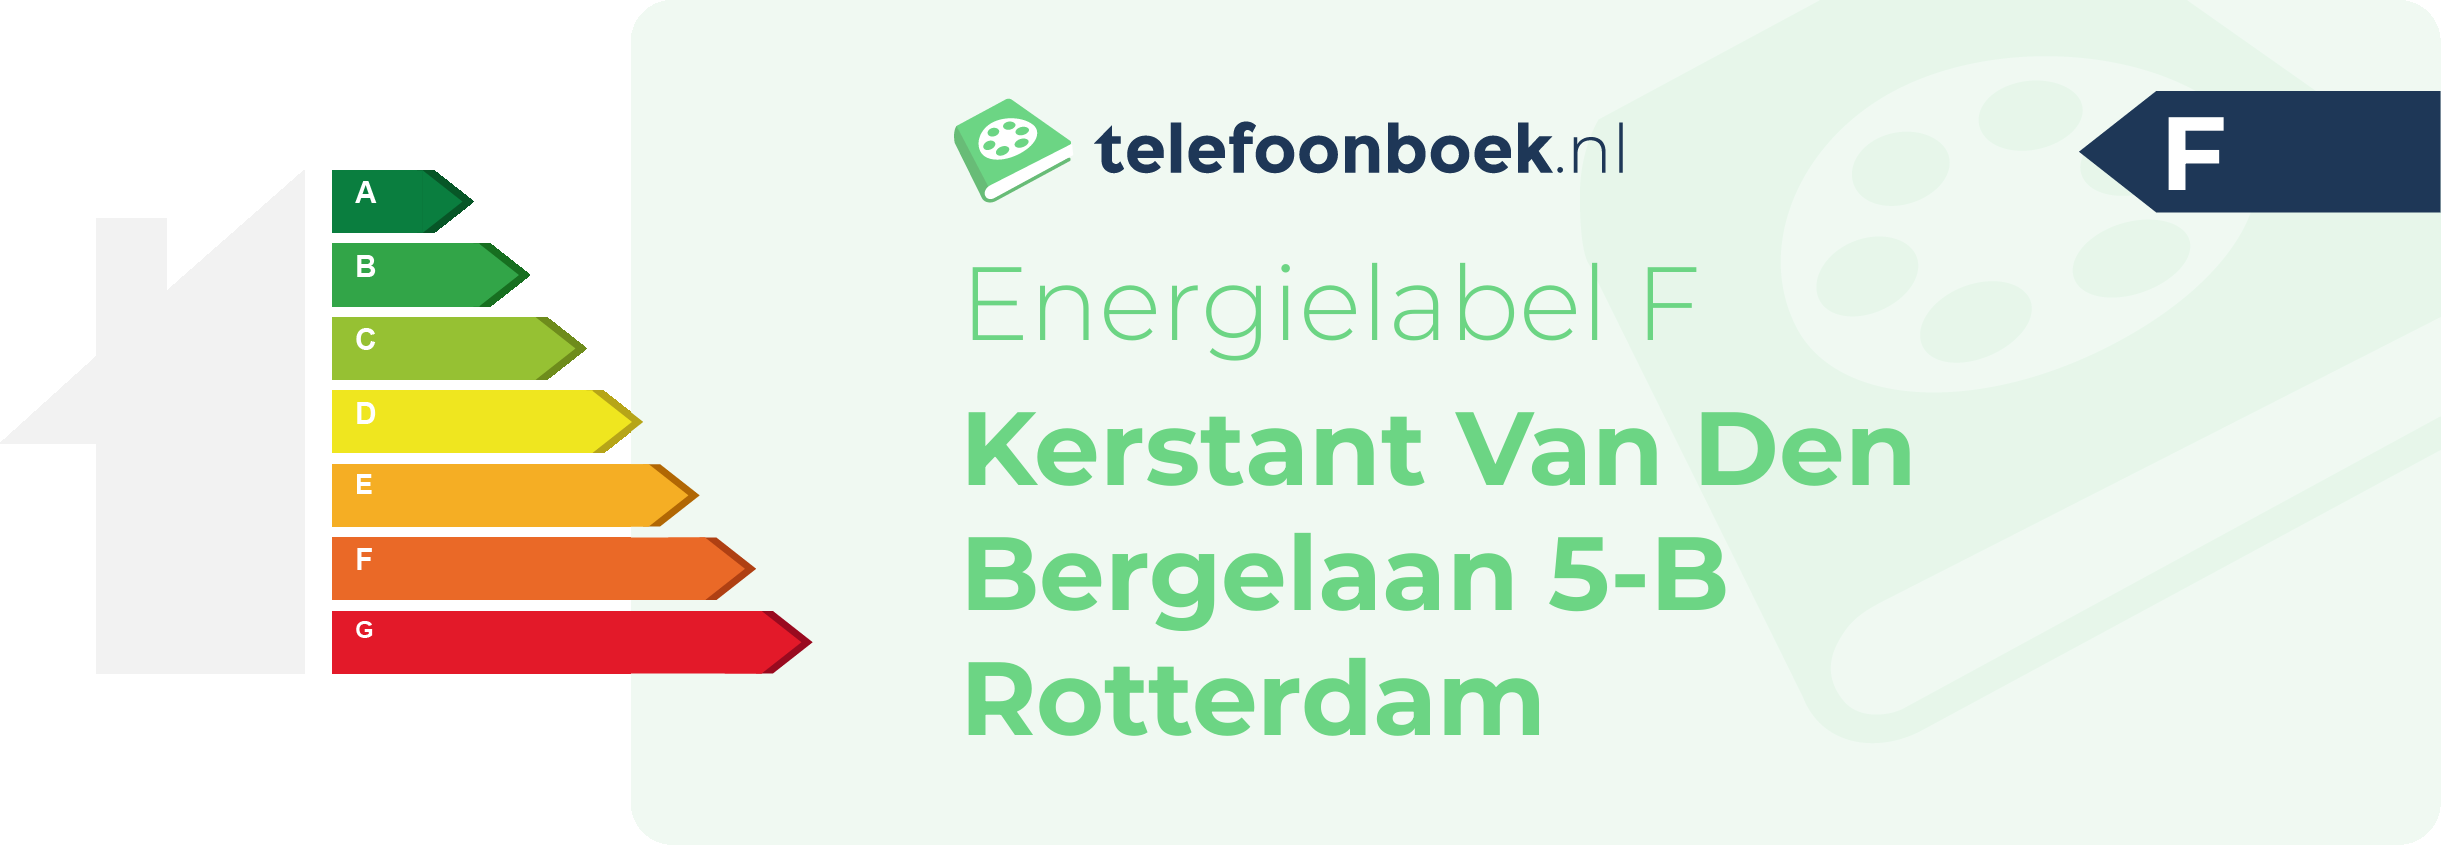 Energielabel Kerstant Van Den Bergelaan 5-B Rotterdam